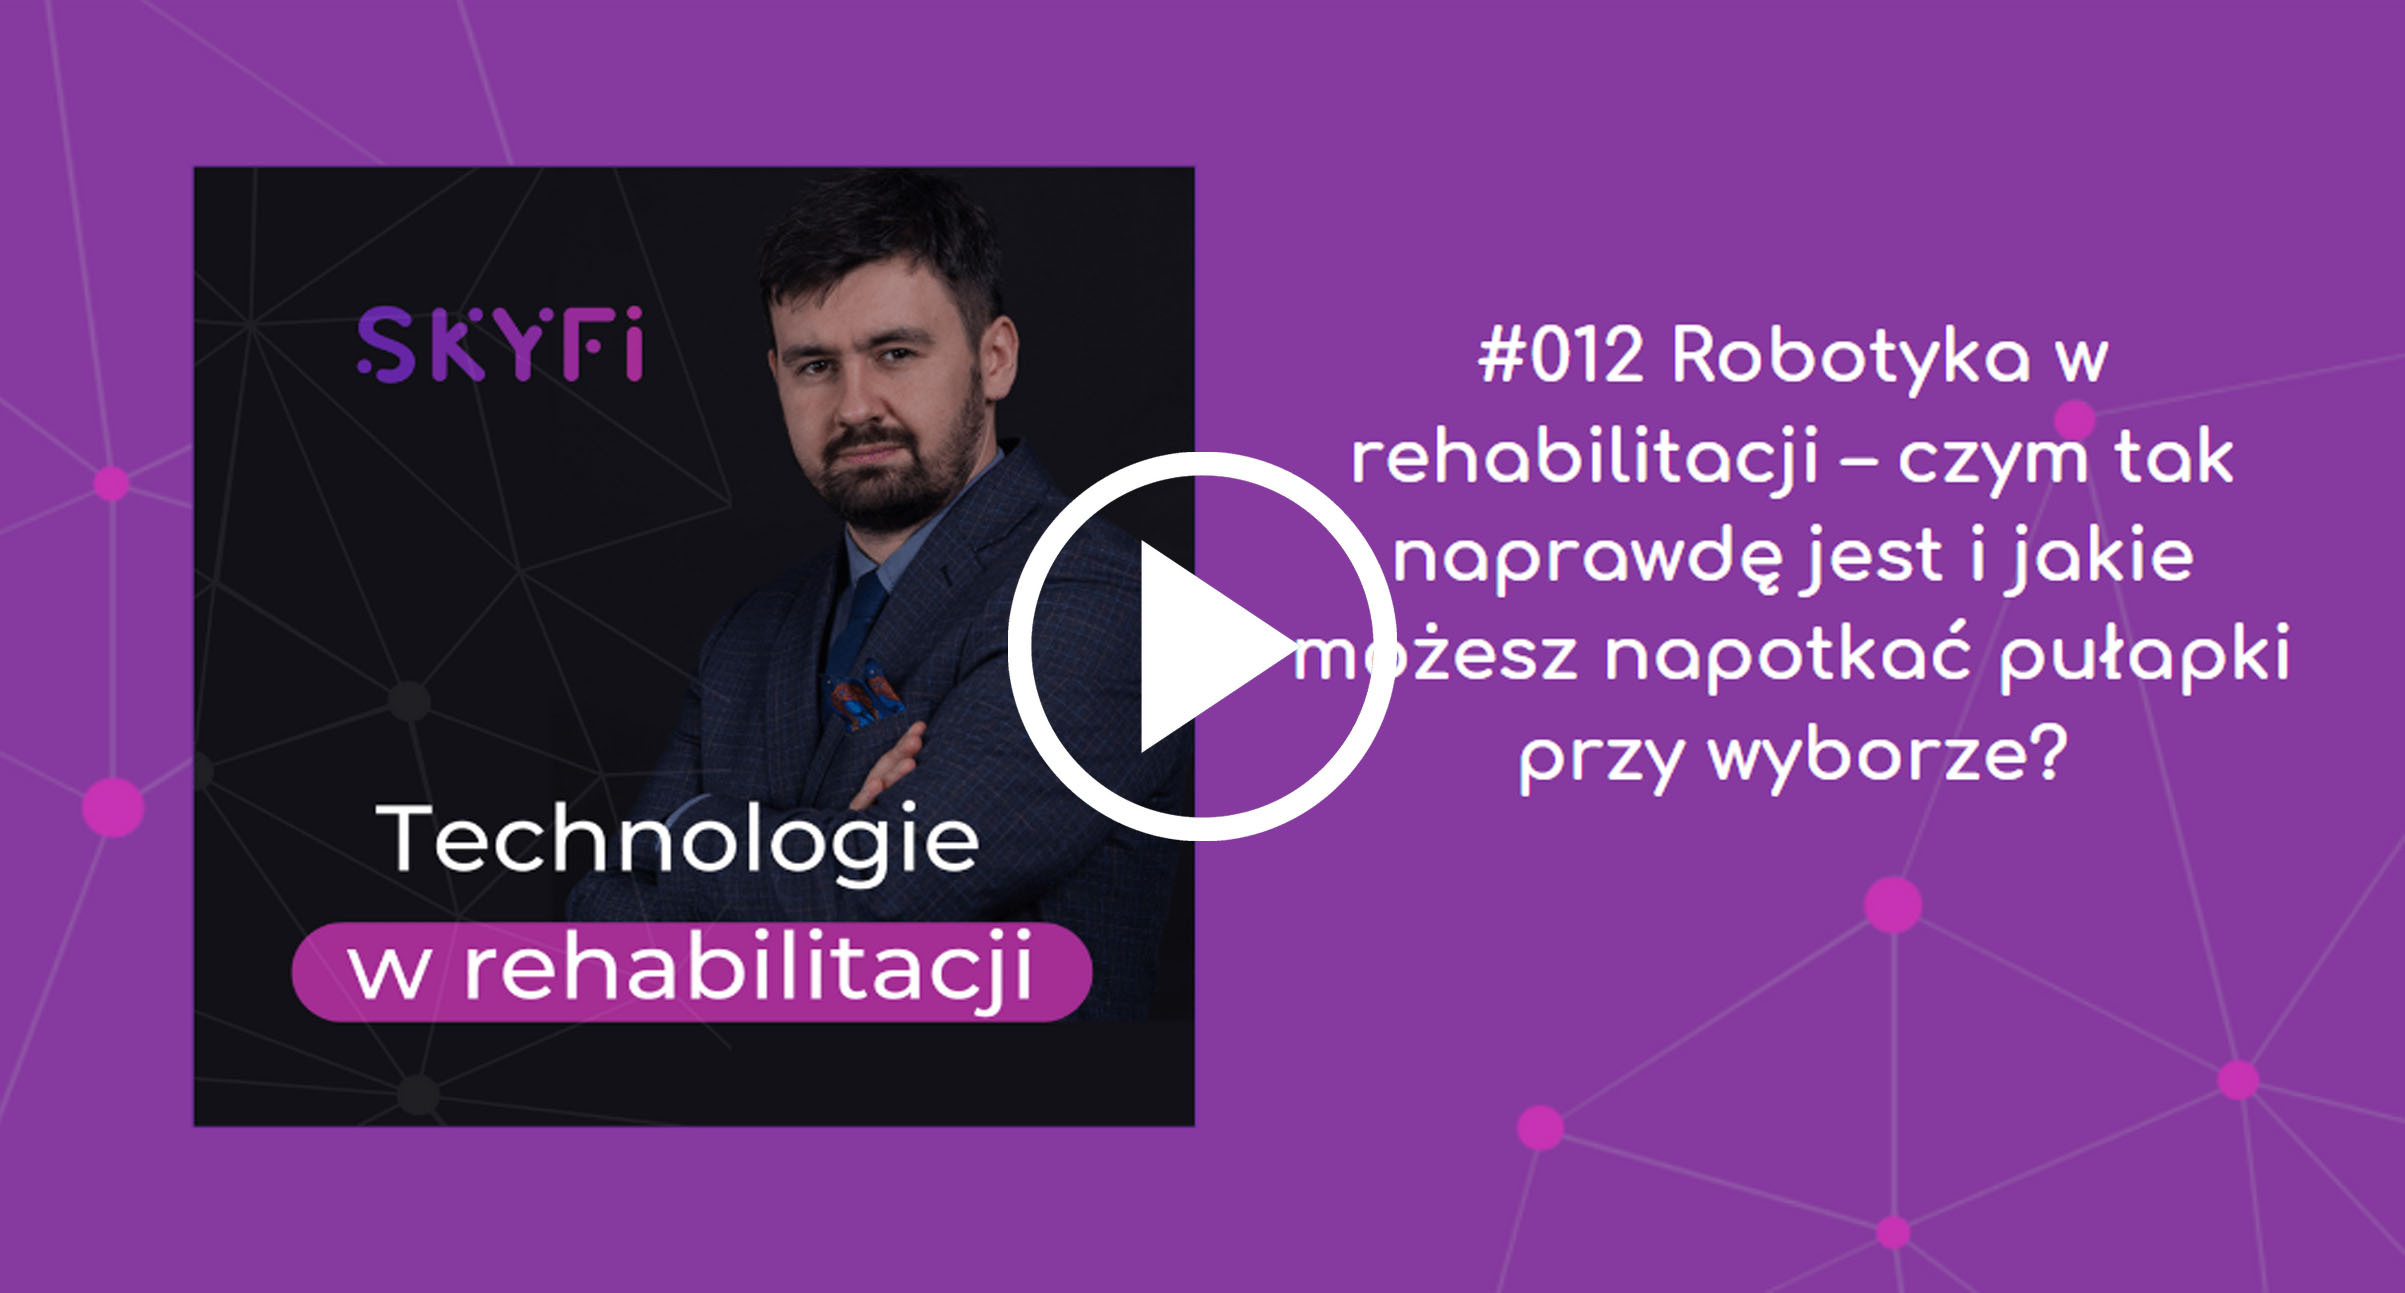 Podcast-12-robotyka-w-rehabilitacji-czym-tak-naprawdę-jest-Skyfi